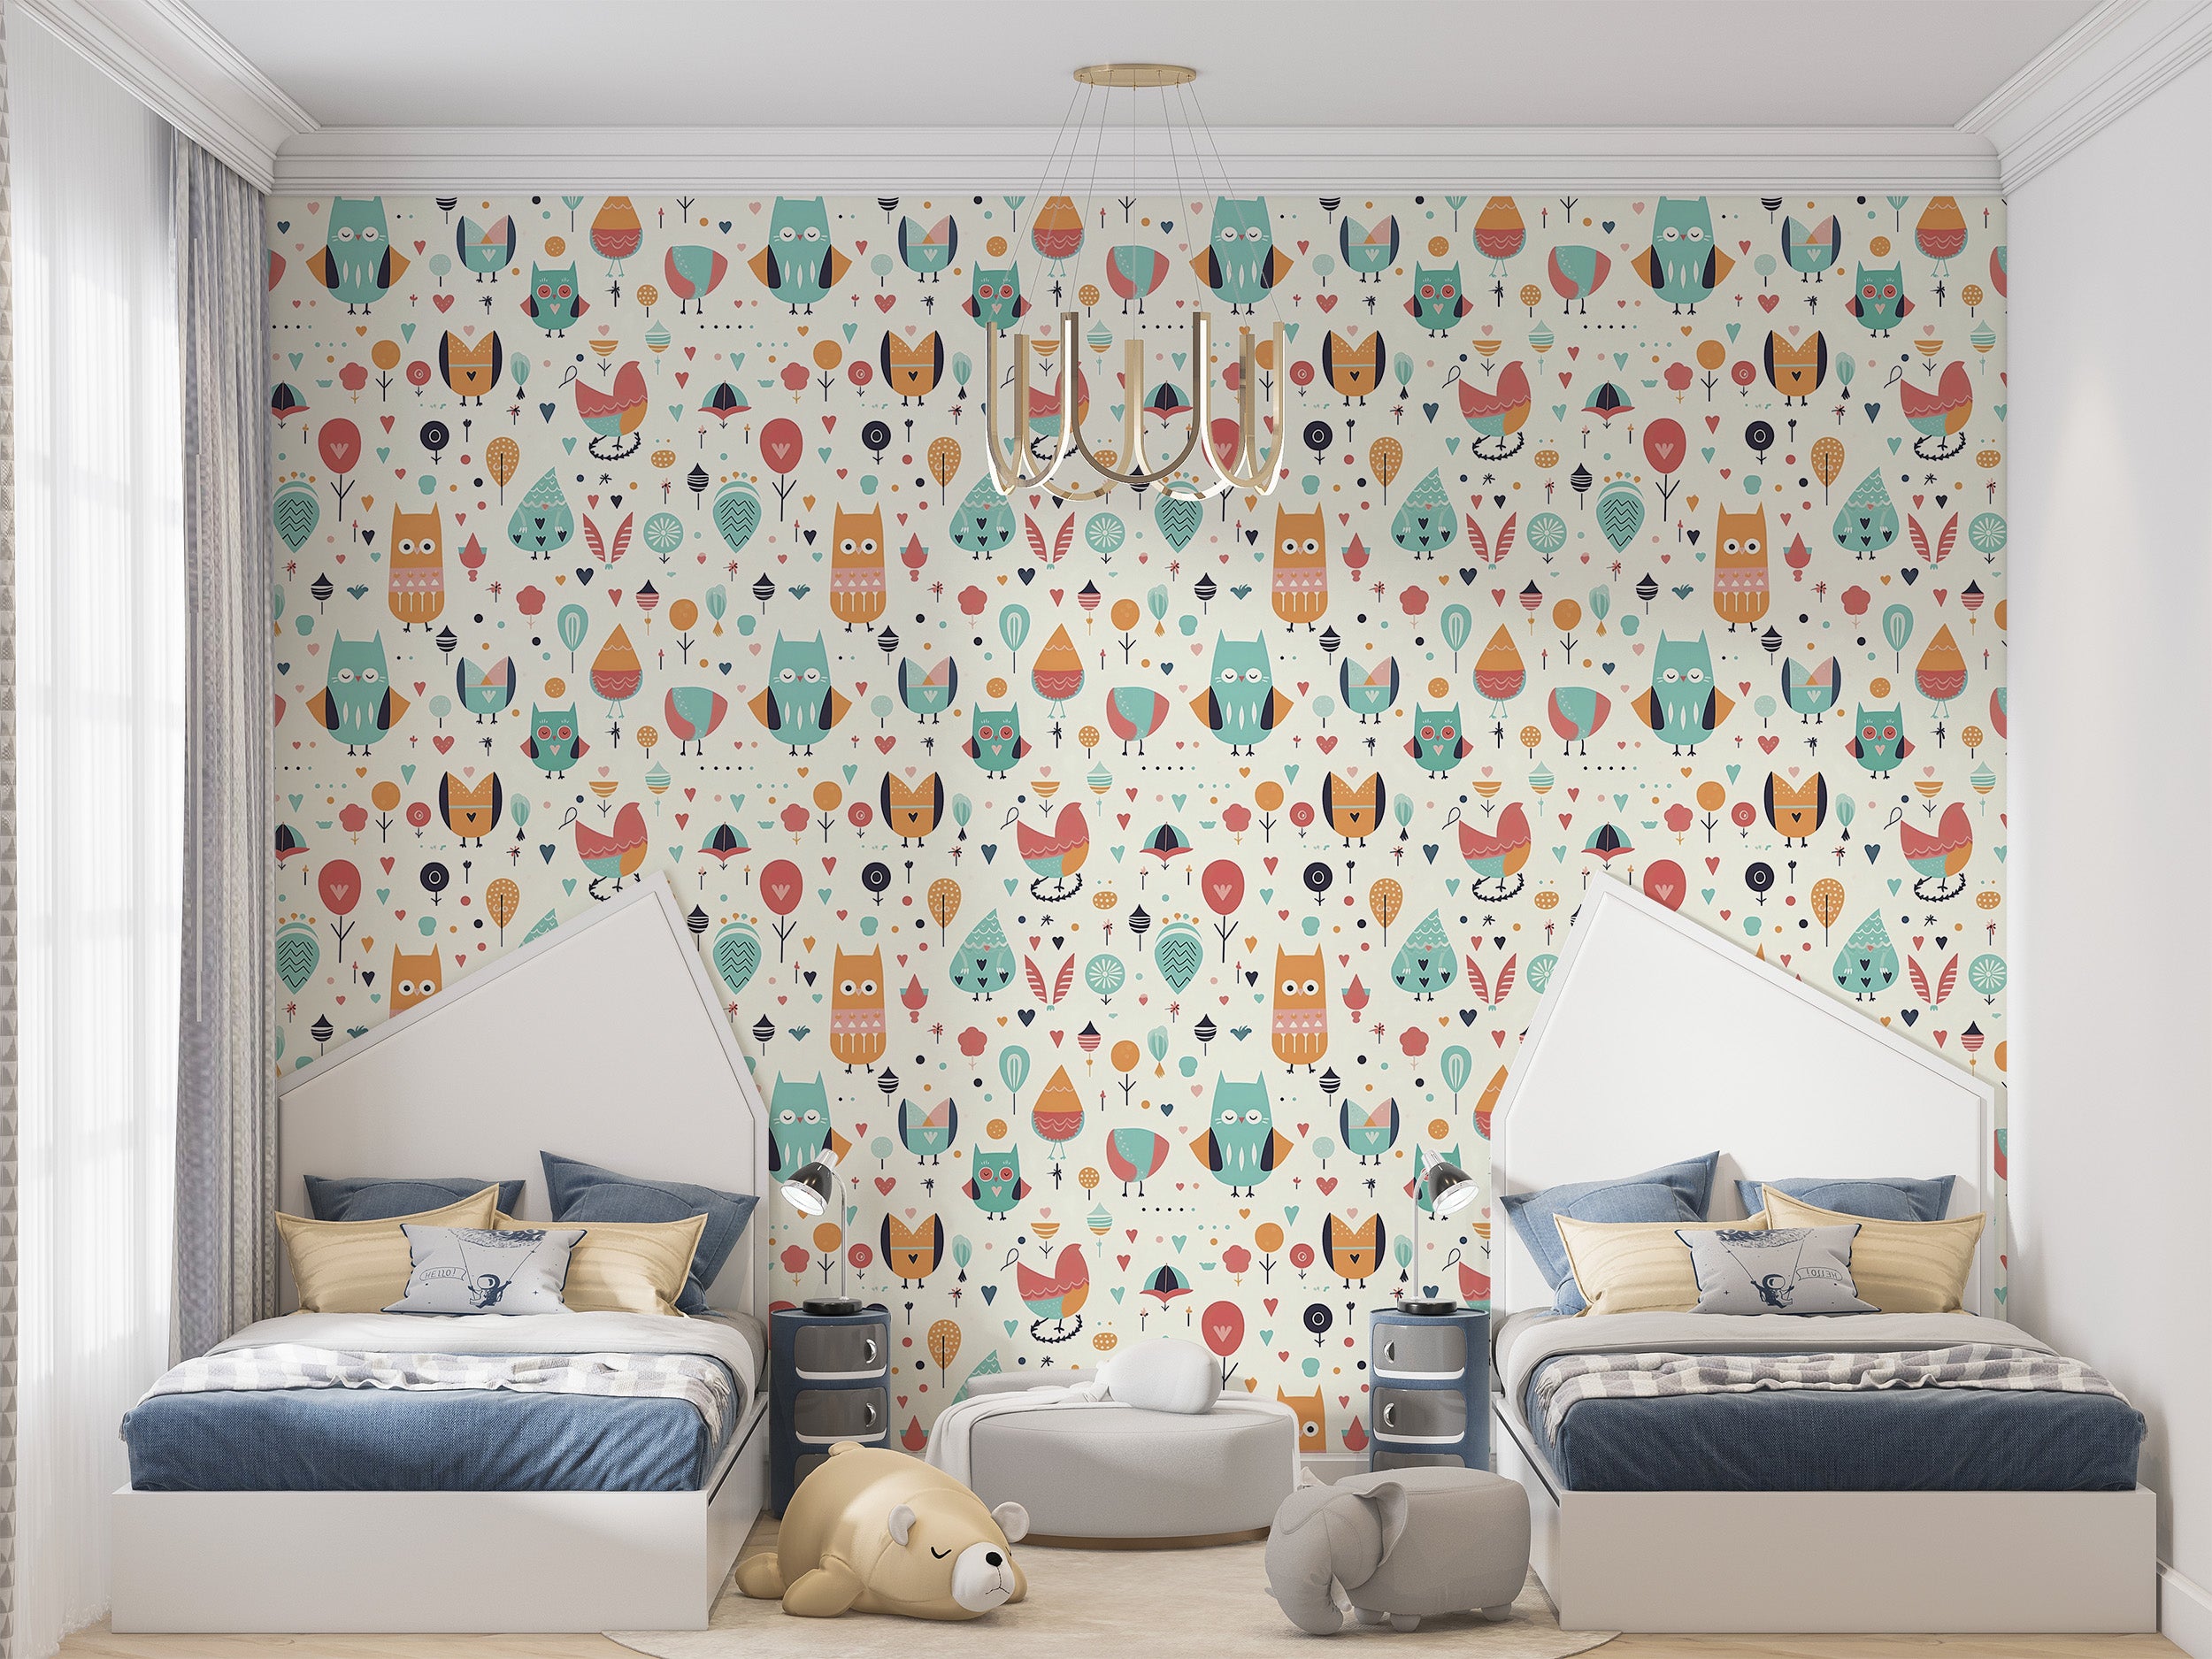 Nursery Birds Pattern Wallpaper with Owl Motifs